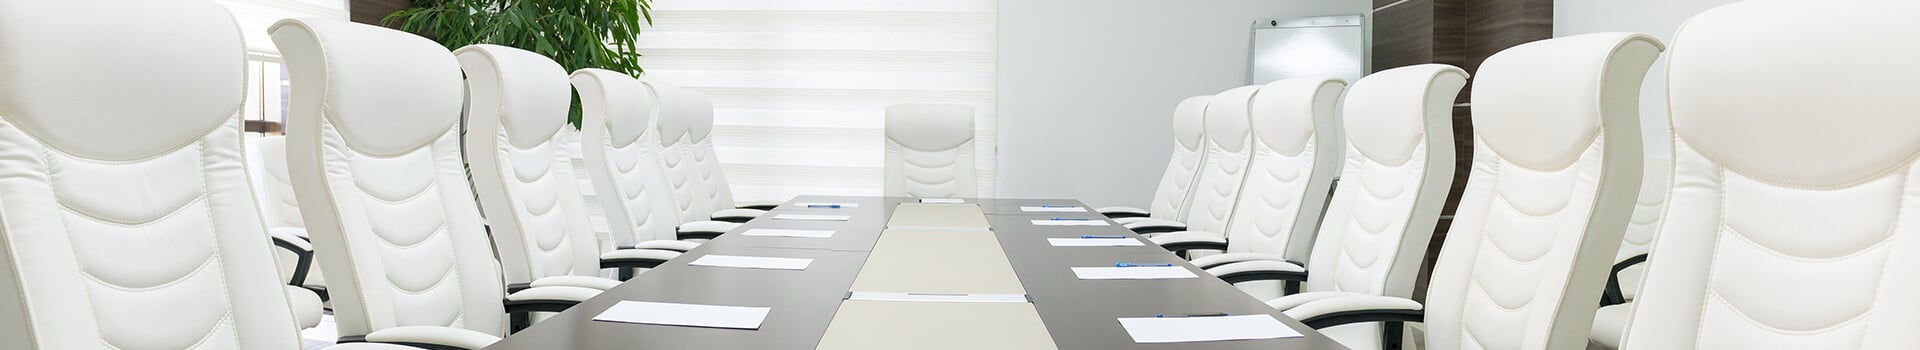 empty business meeting room header